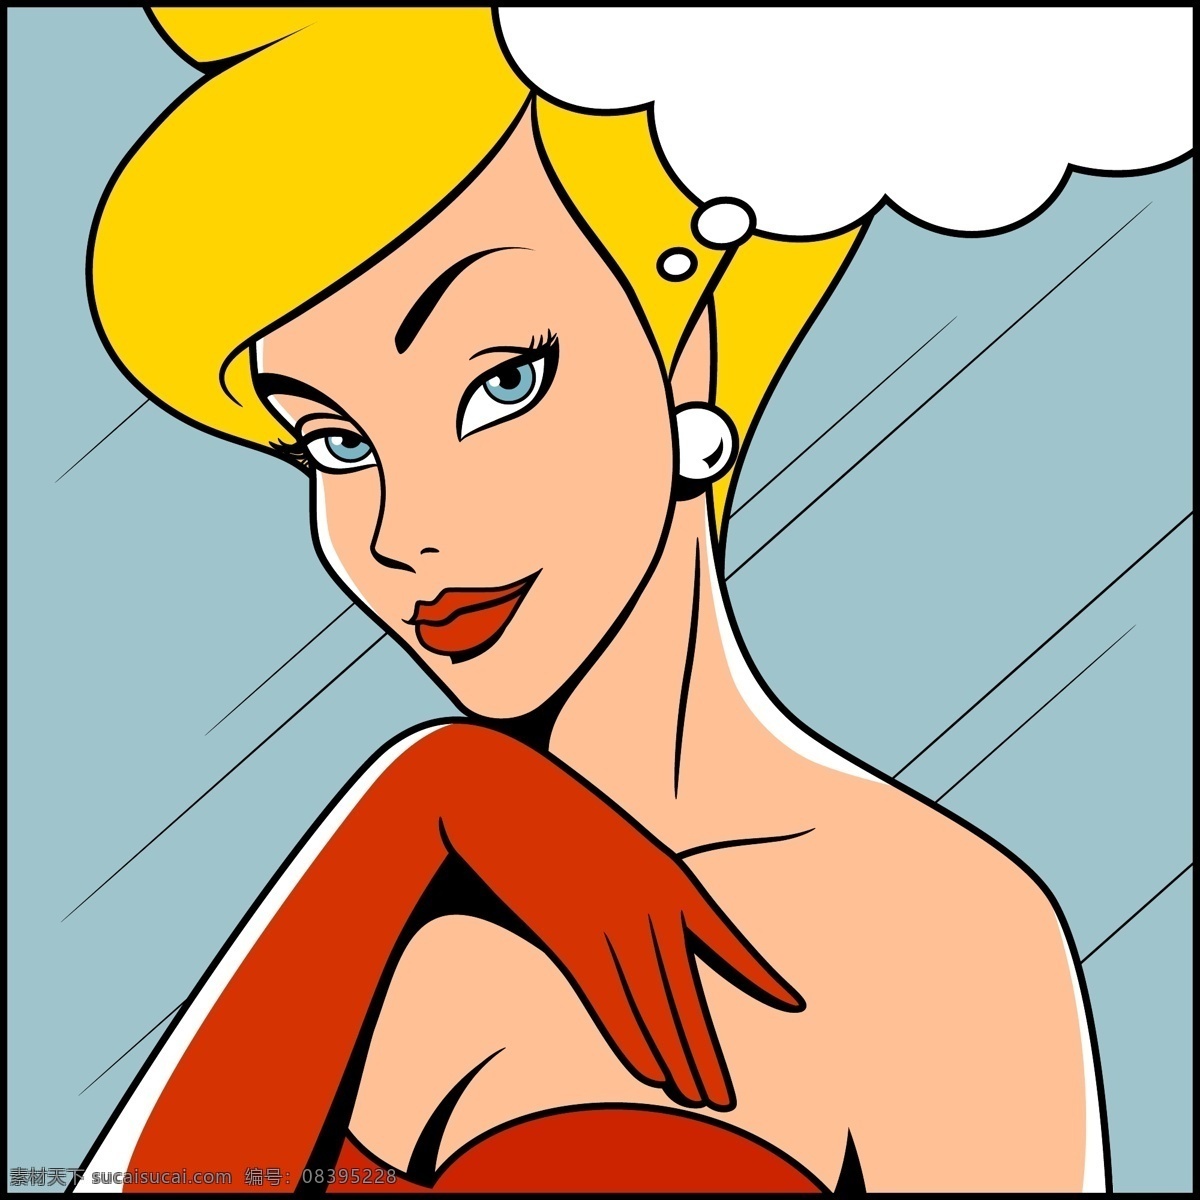 金发 欧美 卡通 海报 漫画 风格 人物 矢量 红色 舞裙 美女 风景 插画 手绘 扁平化 矢量素材